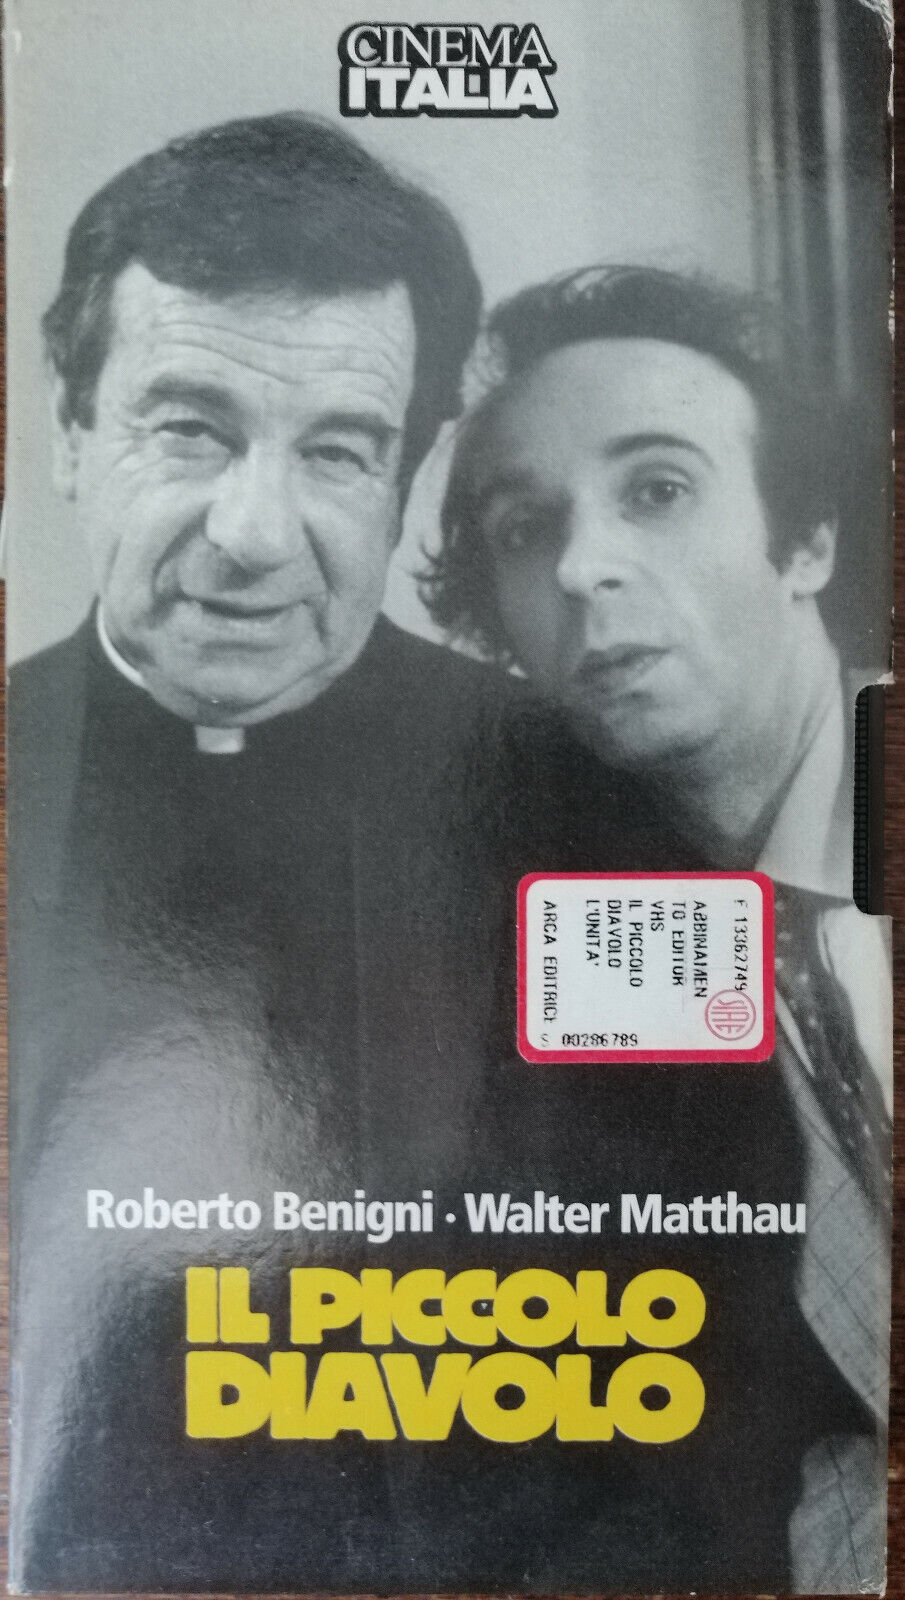 Il piccolo diavolo - Benigni, Matthau - 1988 - VHS -A vhs usato